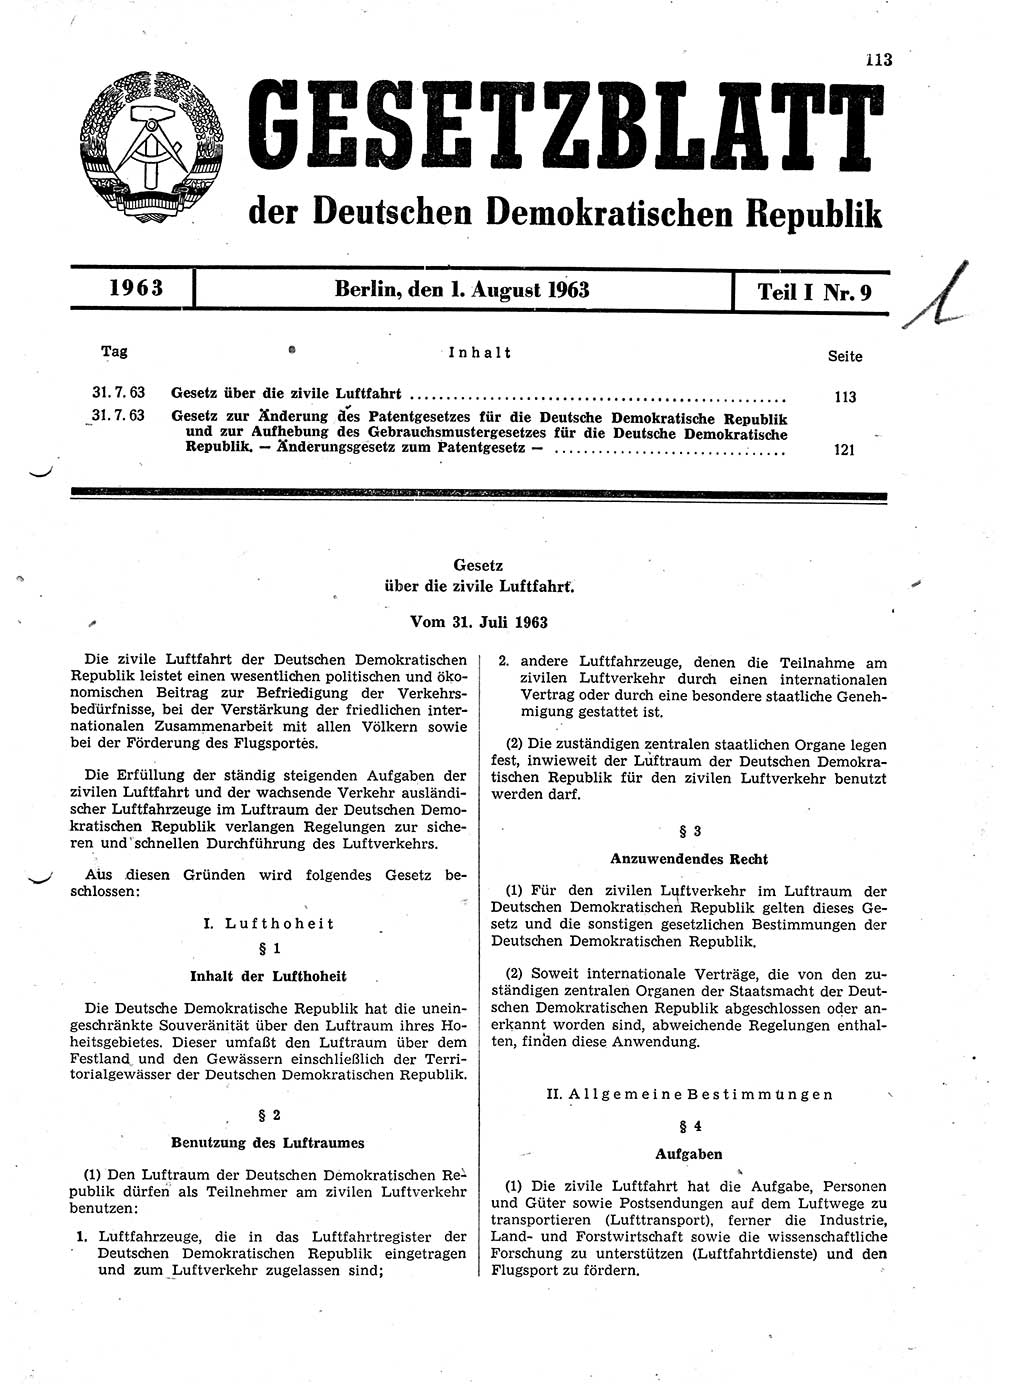 Gesetzblatt (GBl.) der Deutschen Demokratischen Republik (DDR) Teil Ⅰ 1963, Seite 113 (GBl. DDR Ⅰ 1963, S. 113)